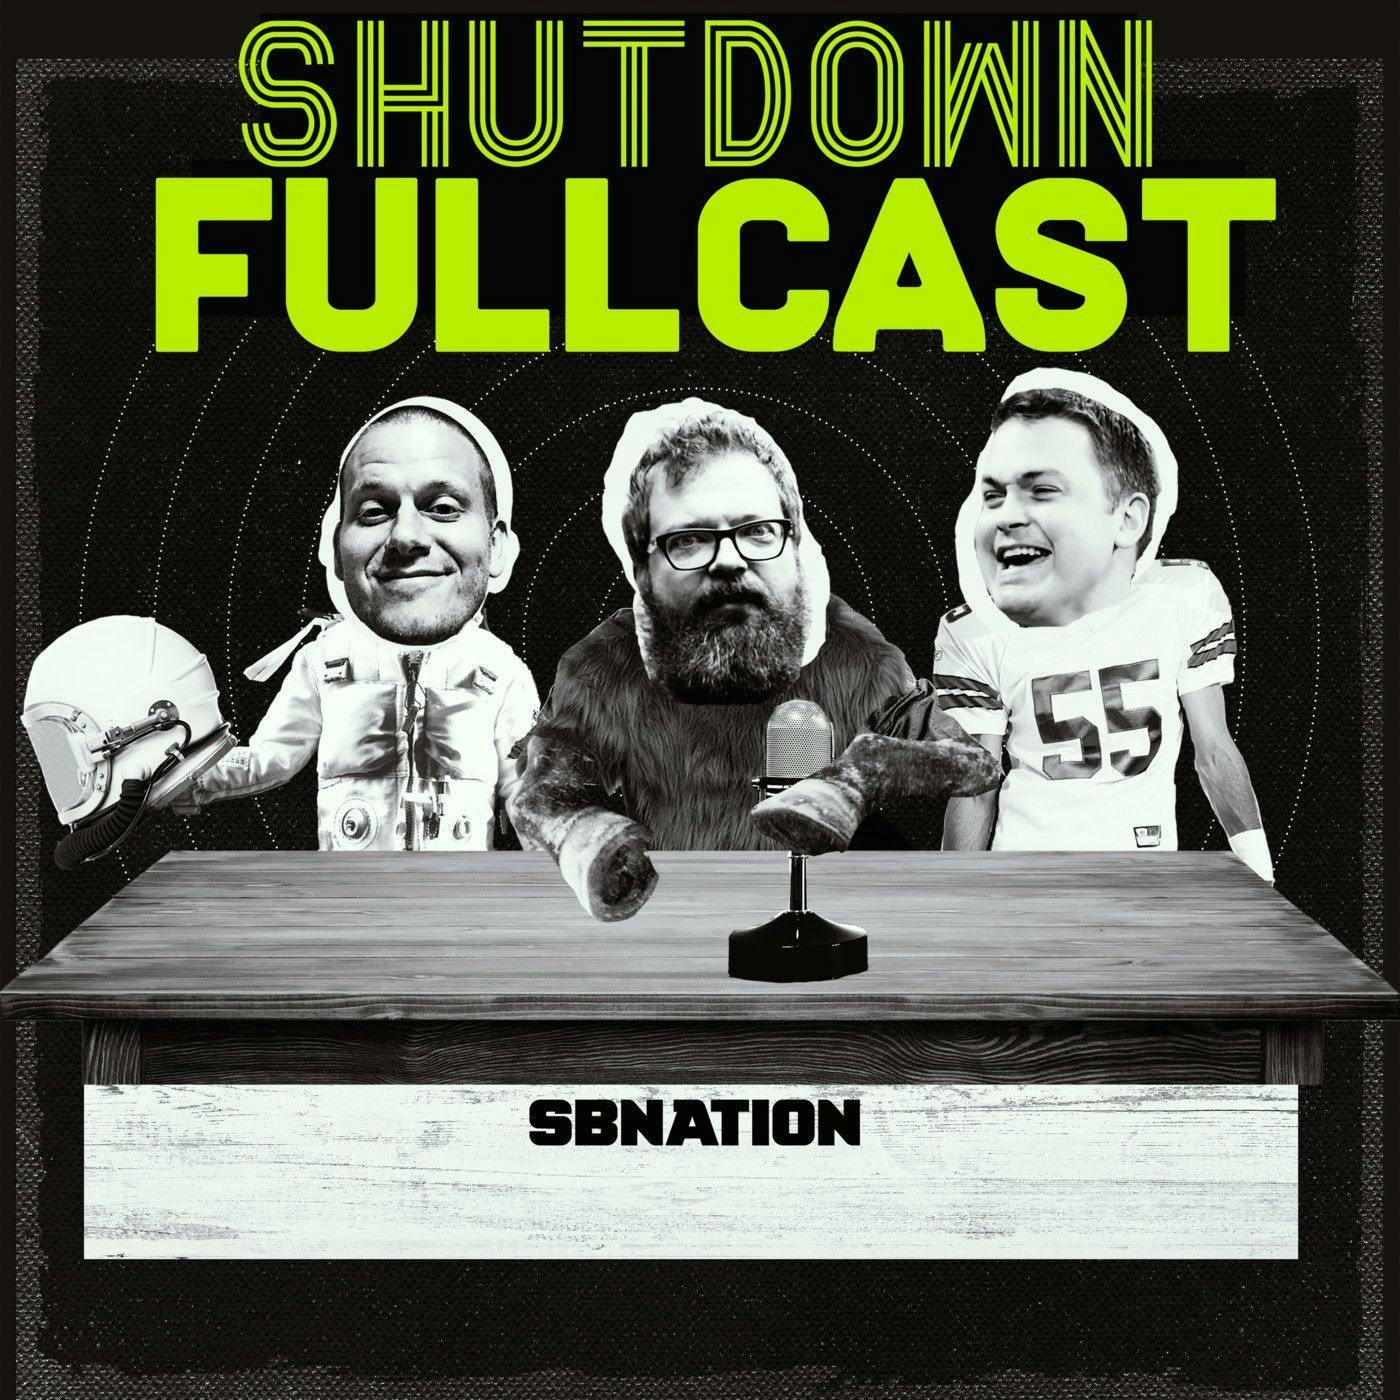 Shutdown Fullcast 40 for 40: The 2017 Fiesta Bowl